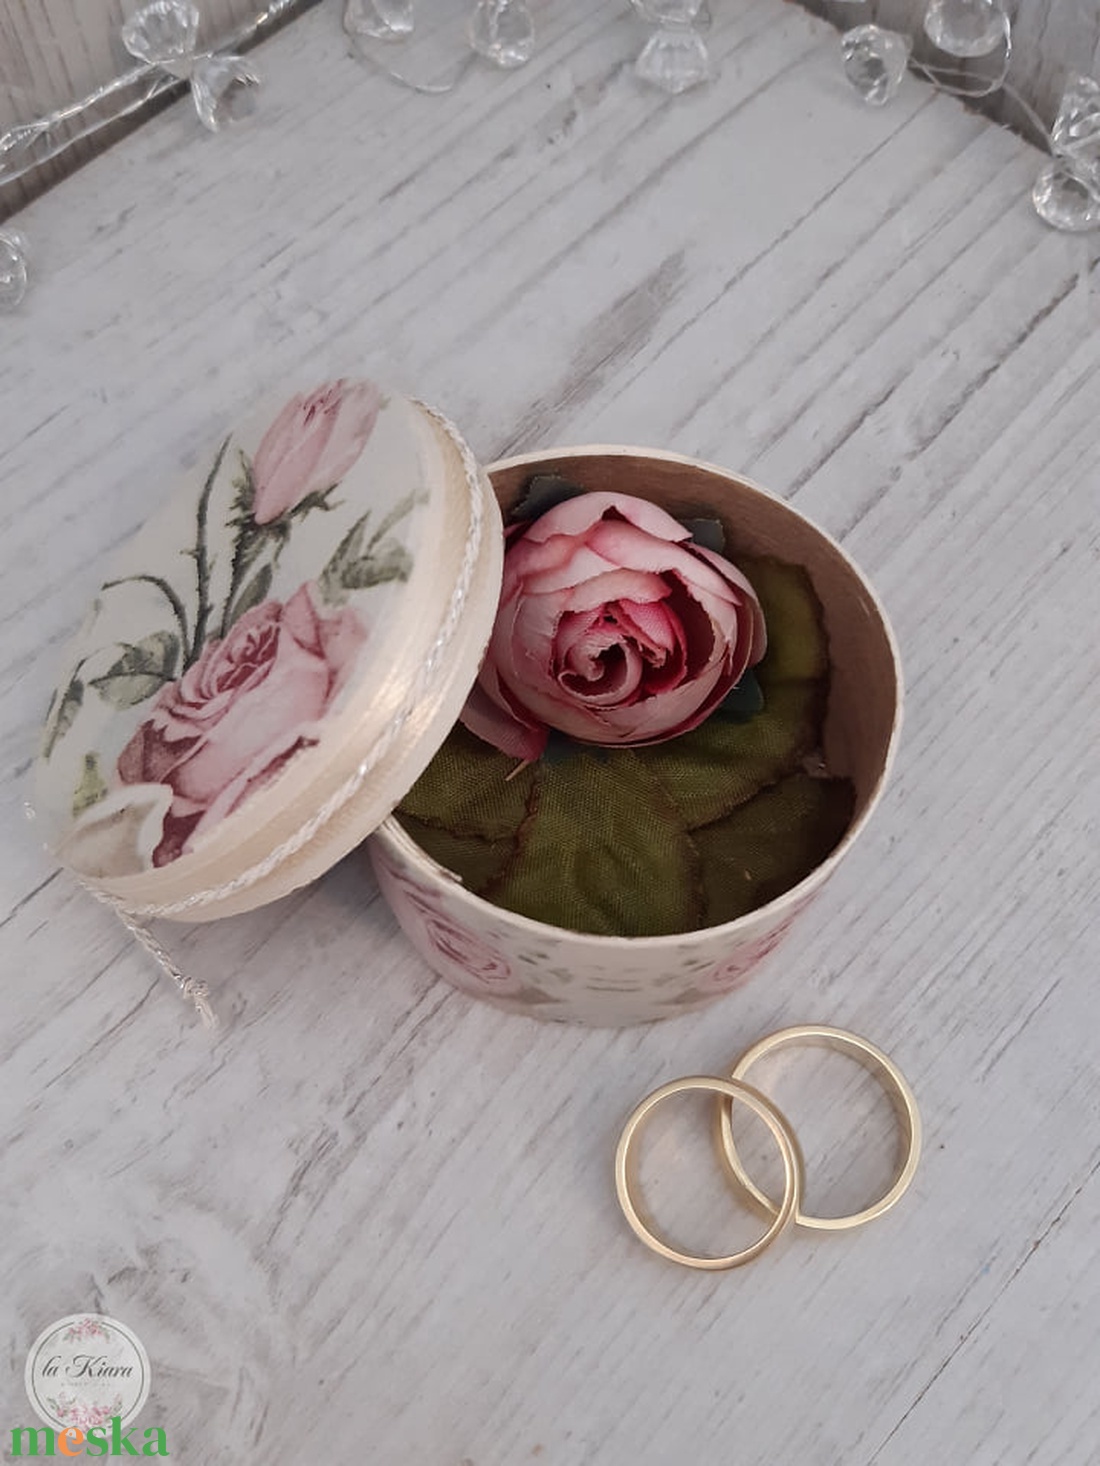 Romantikus, vintage hangulatú gyűrűtartó doboz esküvői ceremóniára! - esküvő - kiegészítők - gyűrűtartó & gyűrűpárna - Meska.hu